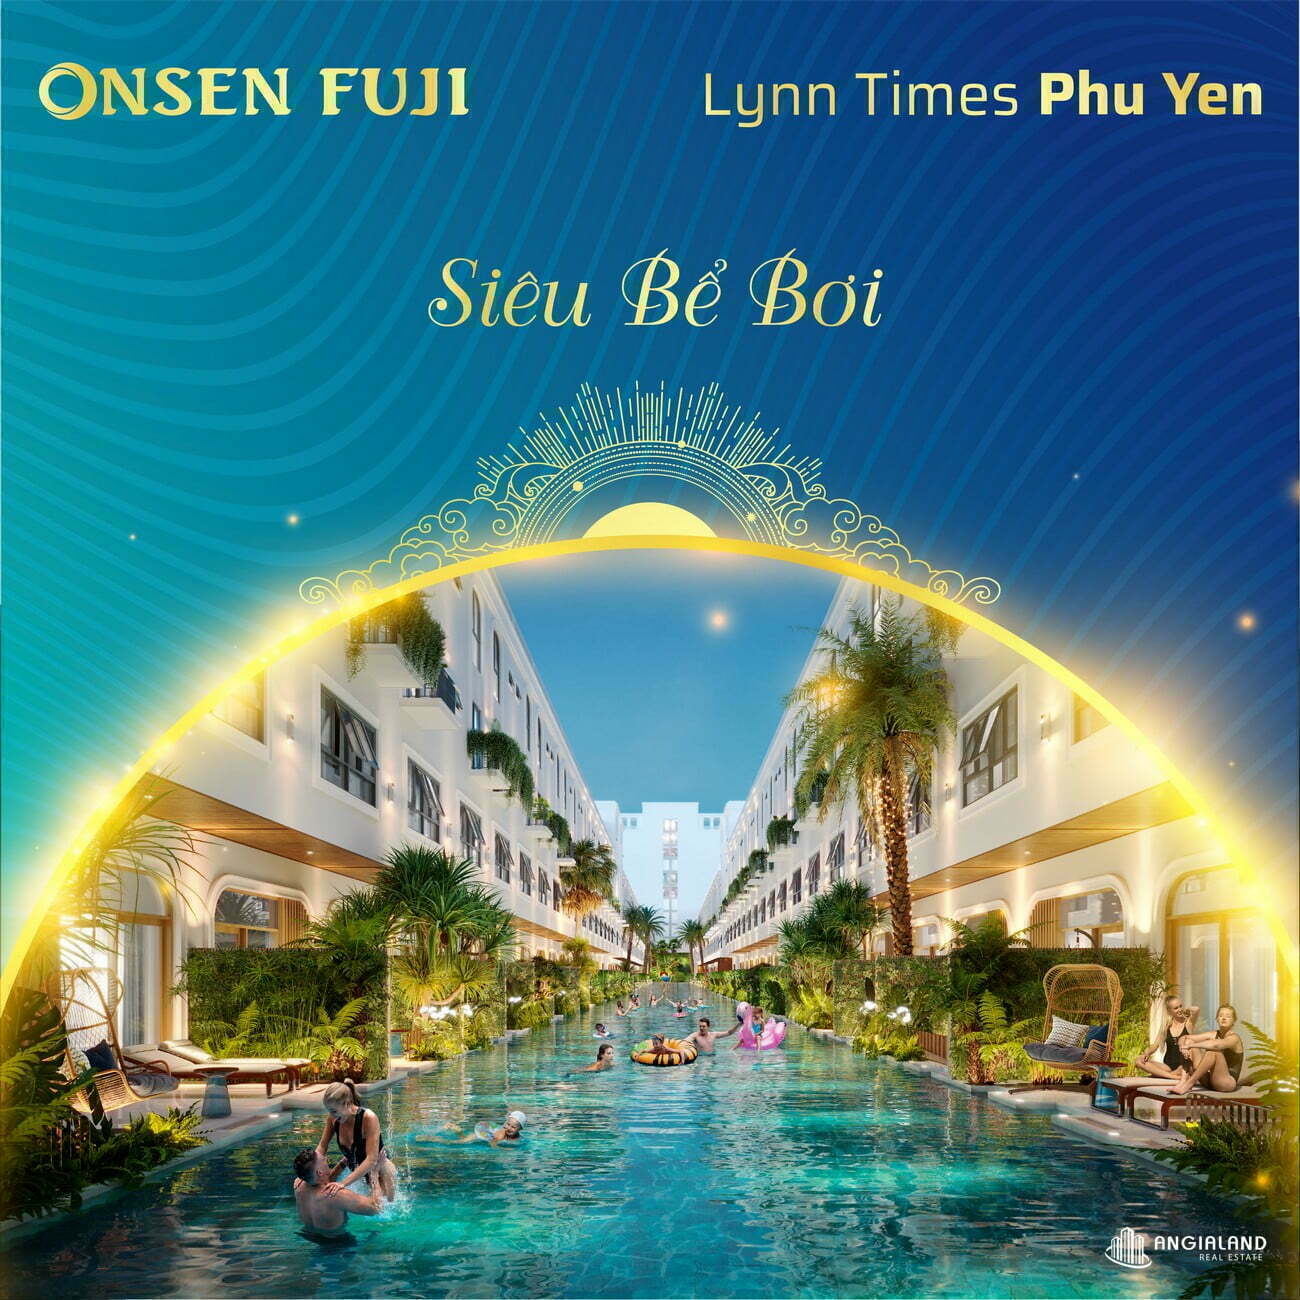 Tiện ích dự án Lynn Times Phú Yên